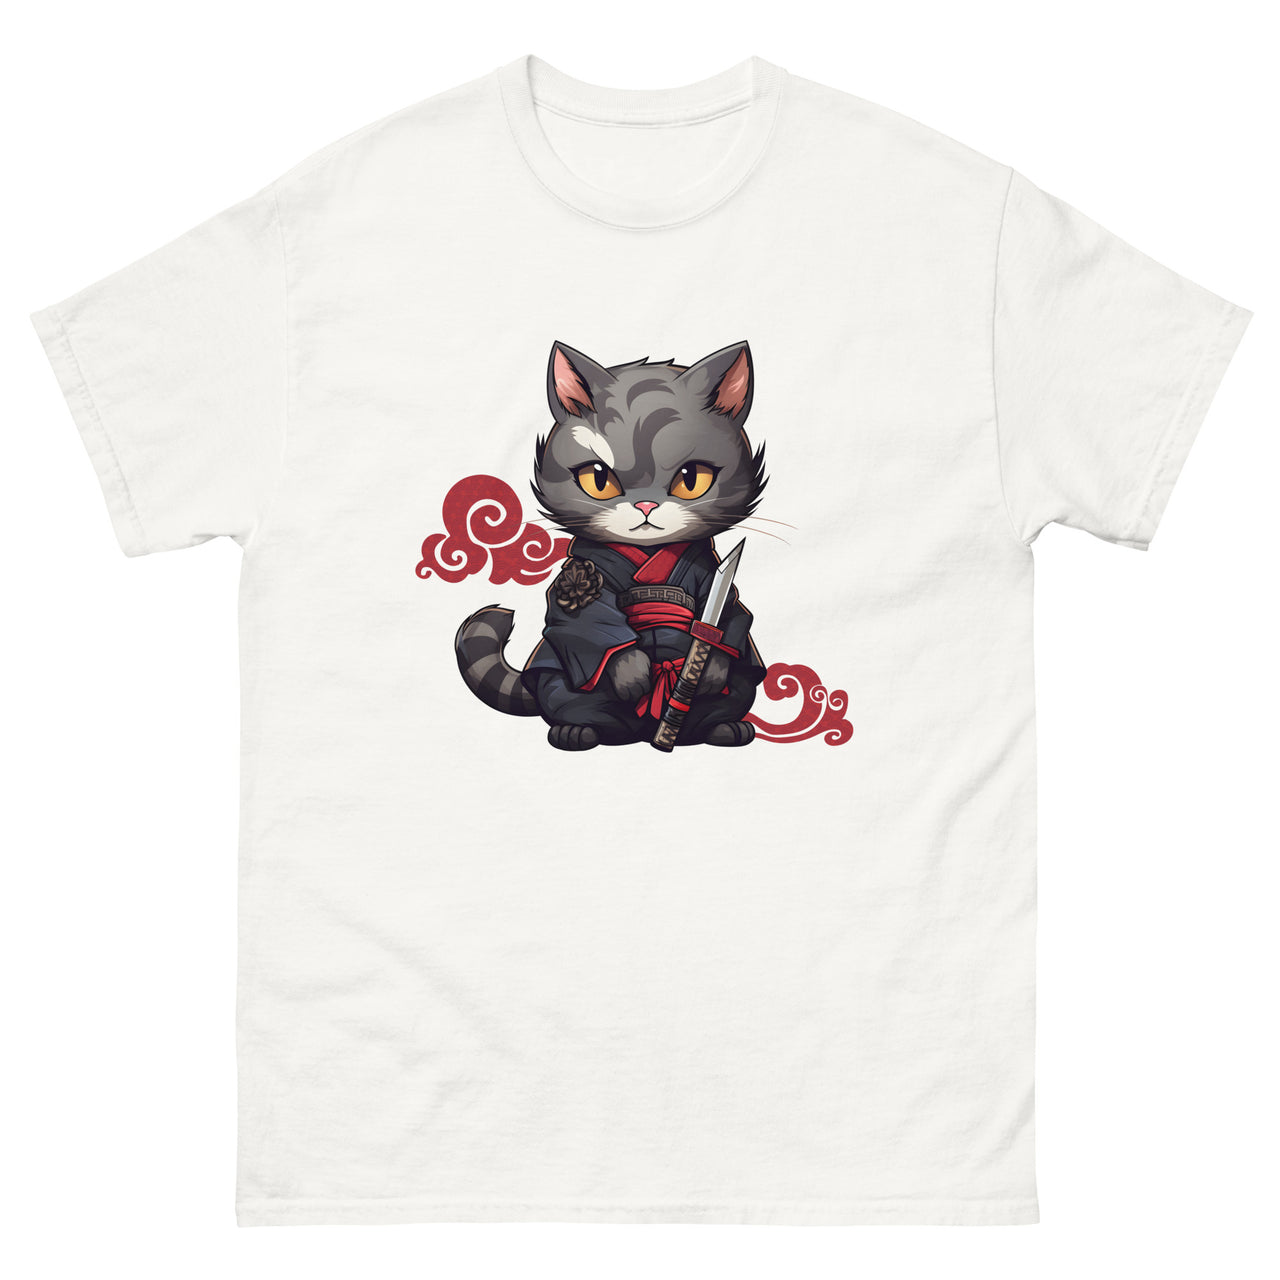 Katana Selfie: Warrior Cat's Photo Op T-Shirt